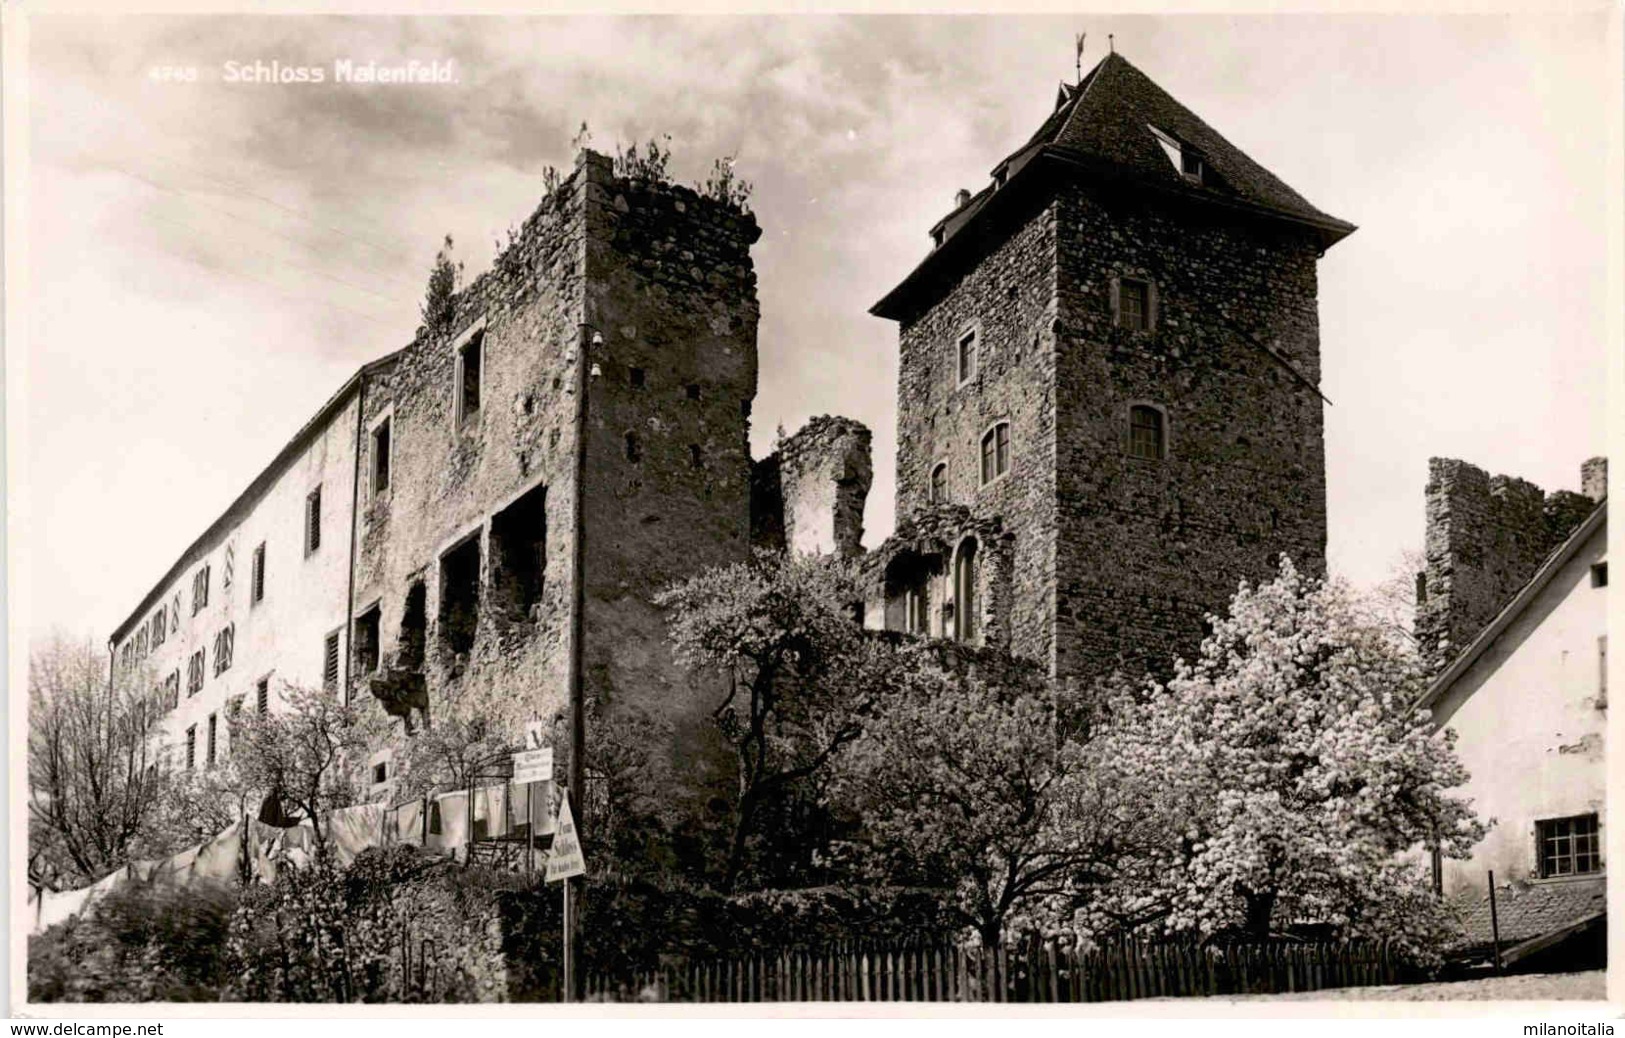 Schloss Maienfeld (4745) * 15. 4. 1943 - Maienfeld